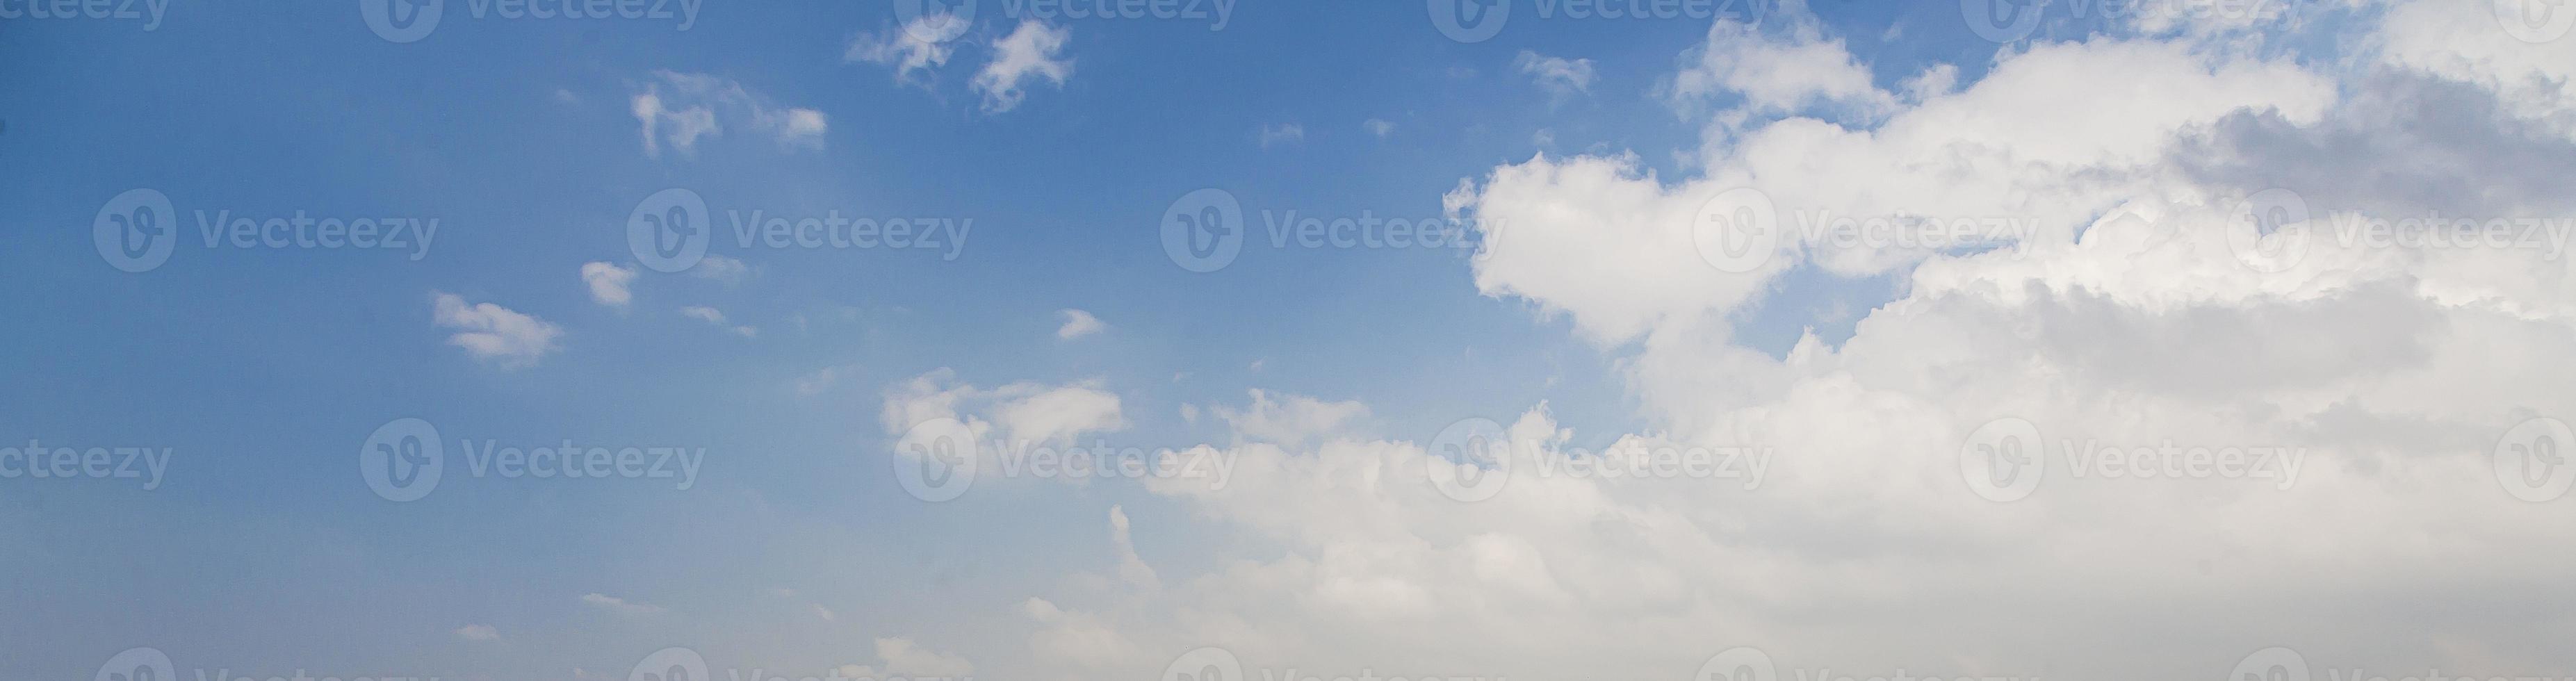 imagem de um céu parcialmente nublado e parcialmente claro durante o dia foto